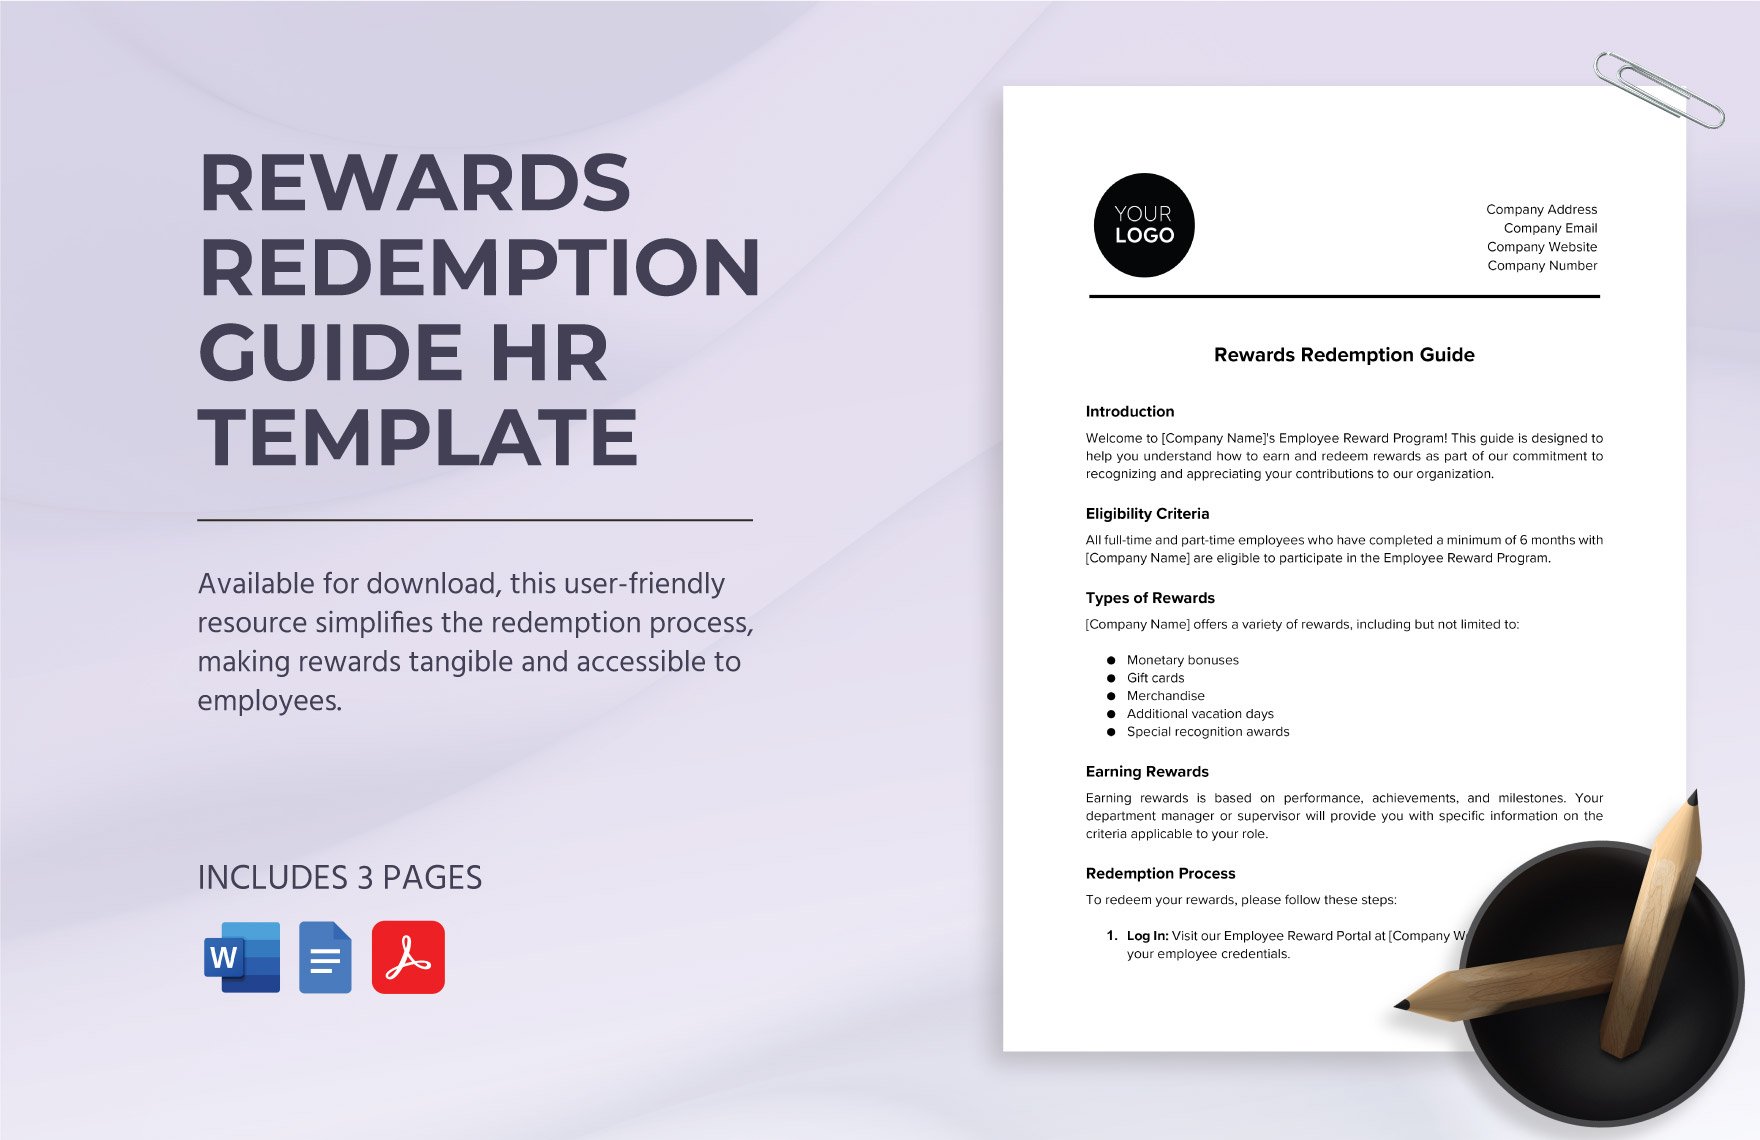 Rewards Redemption Guide HR Template